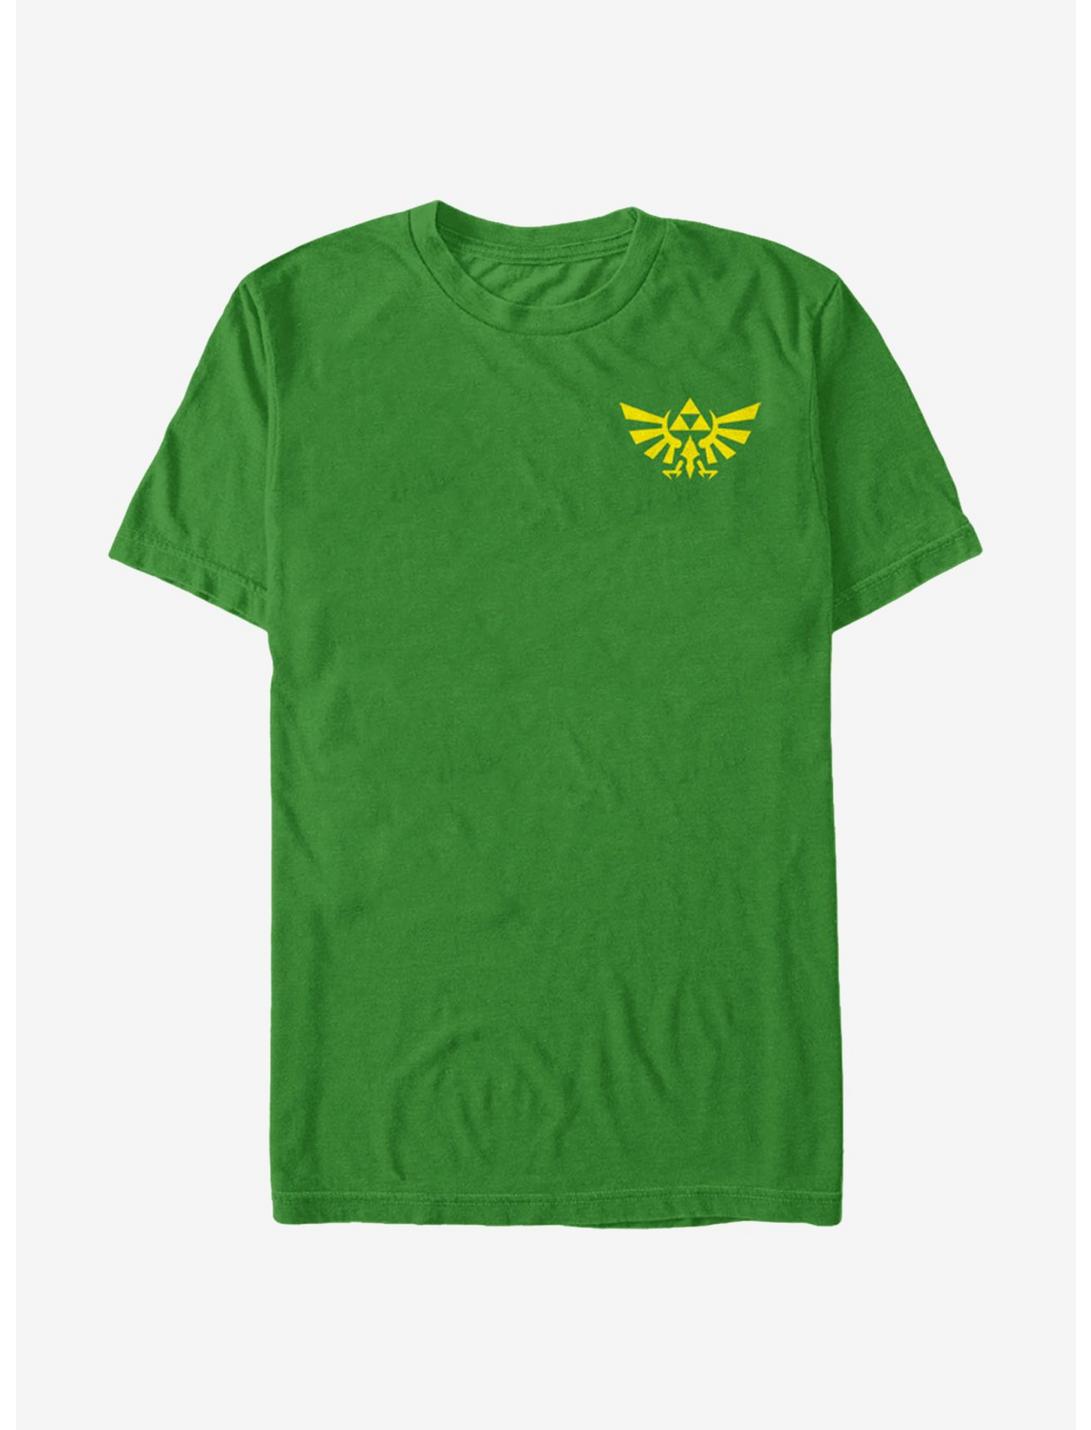 Nintendo Legend of Zelda Mini Triforce T-Shirt, KELLY, hi-res